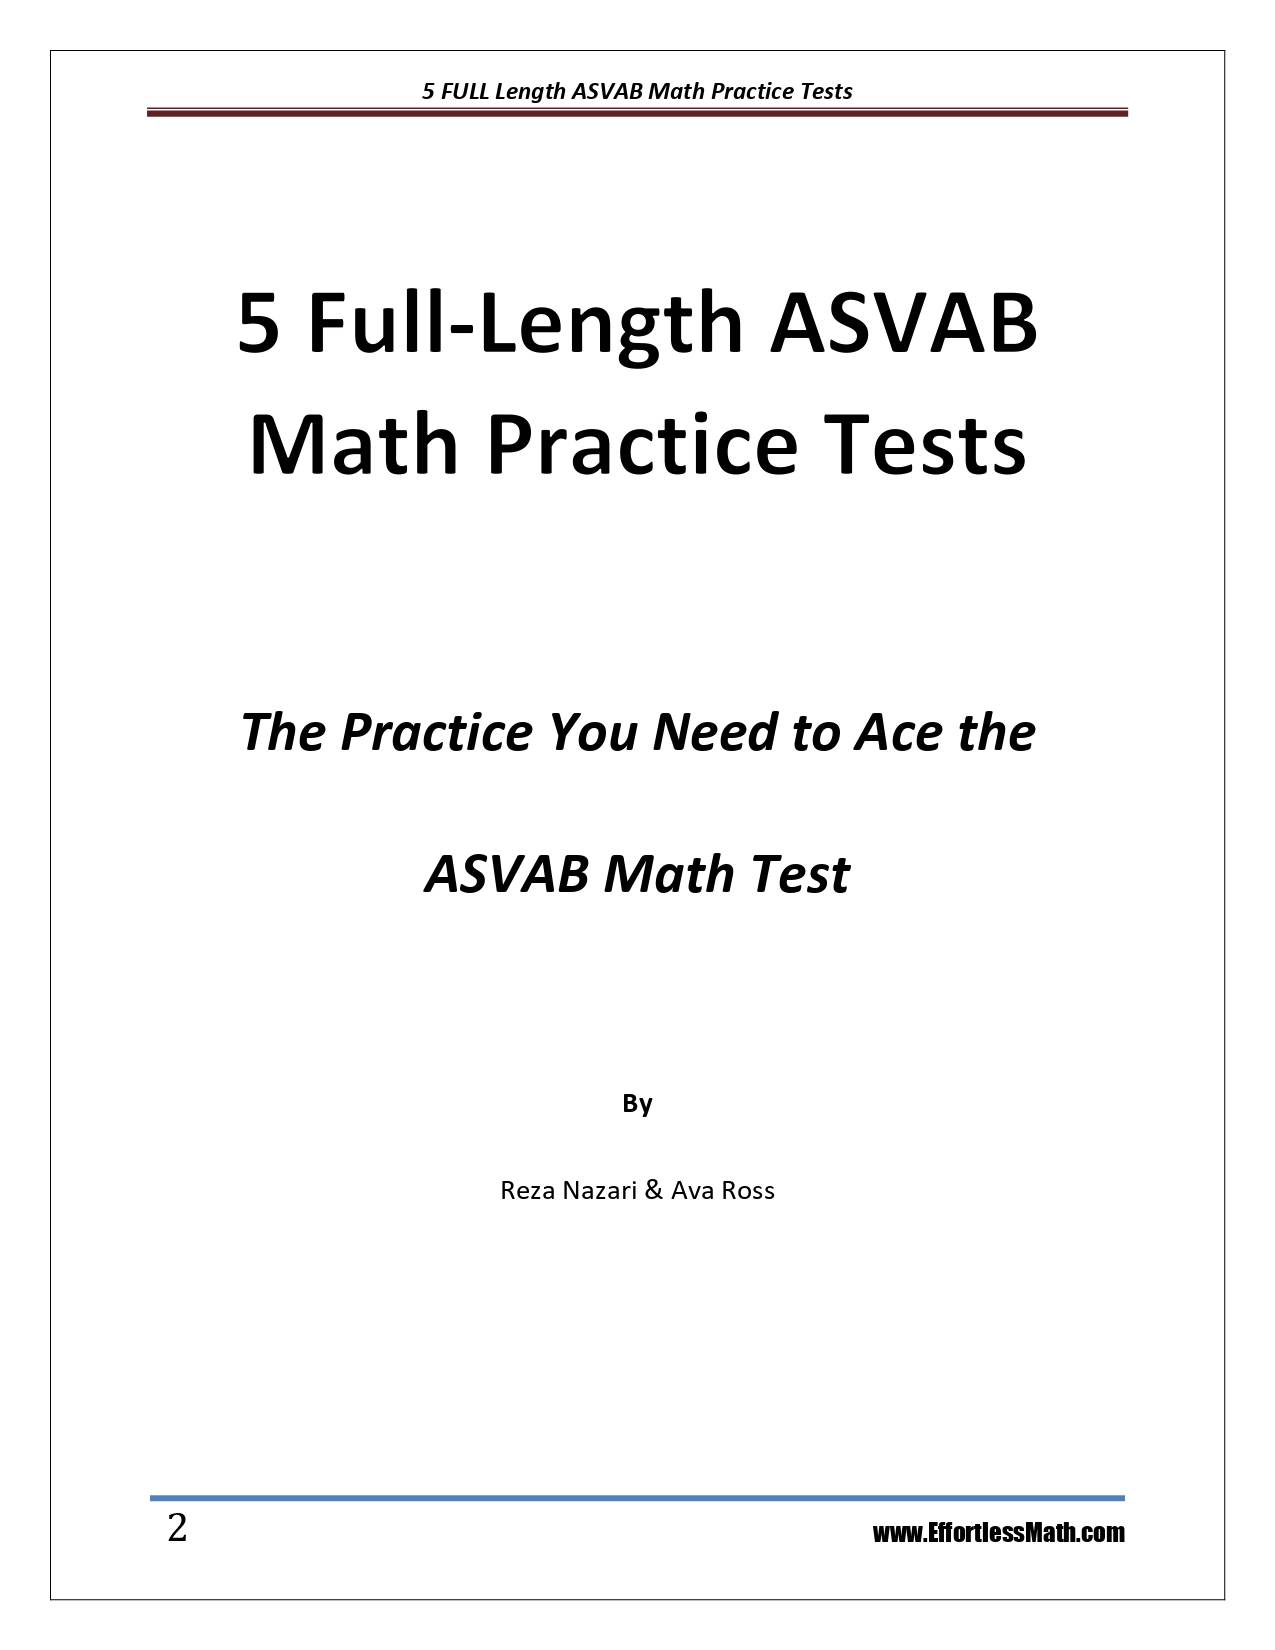 asvab math practice exam